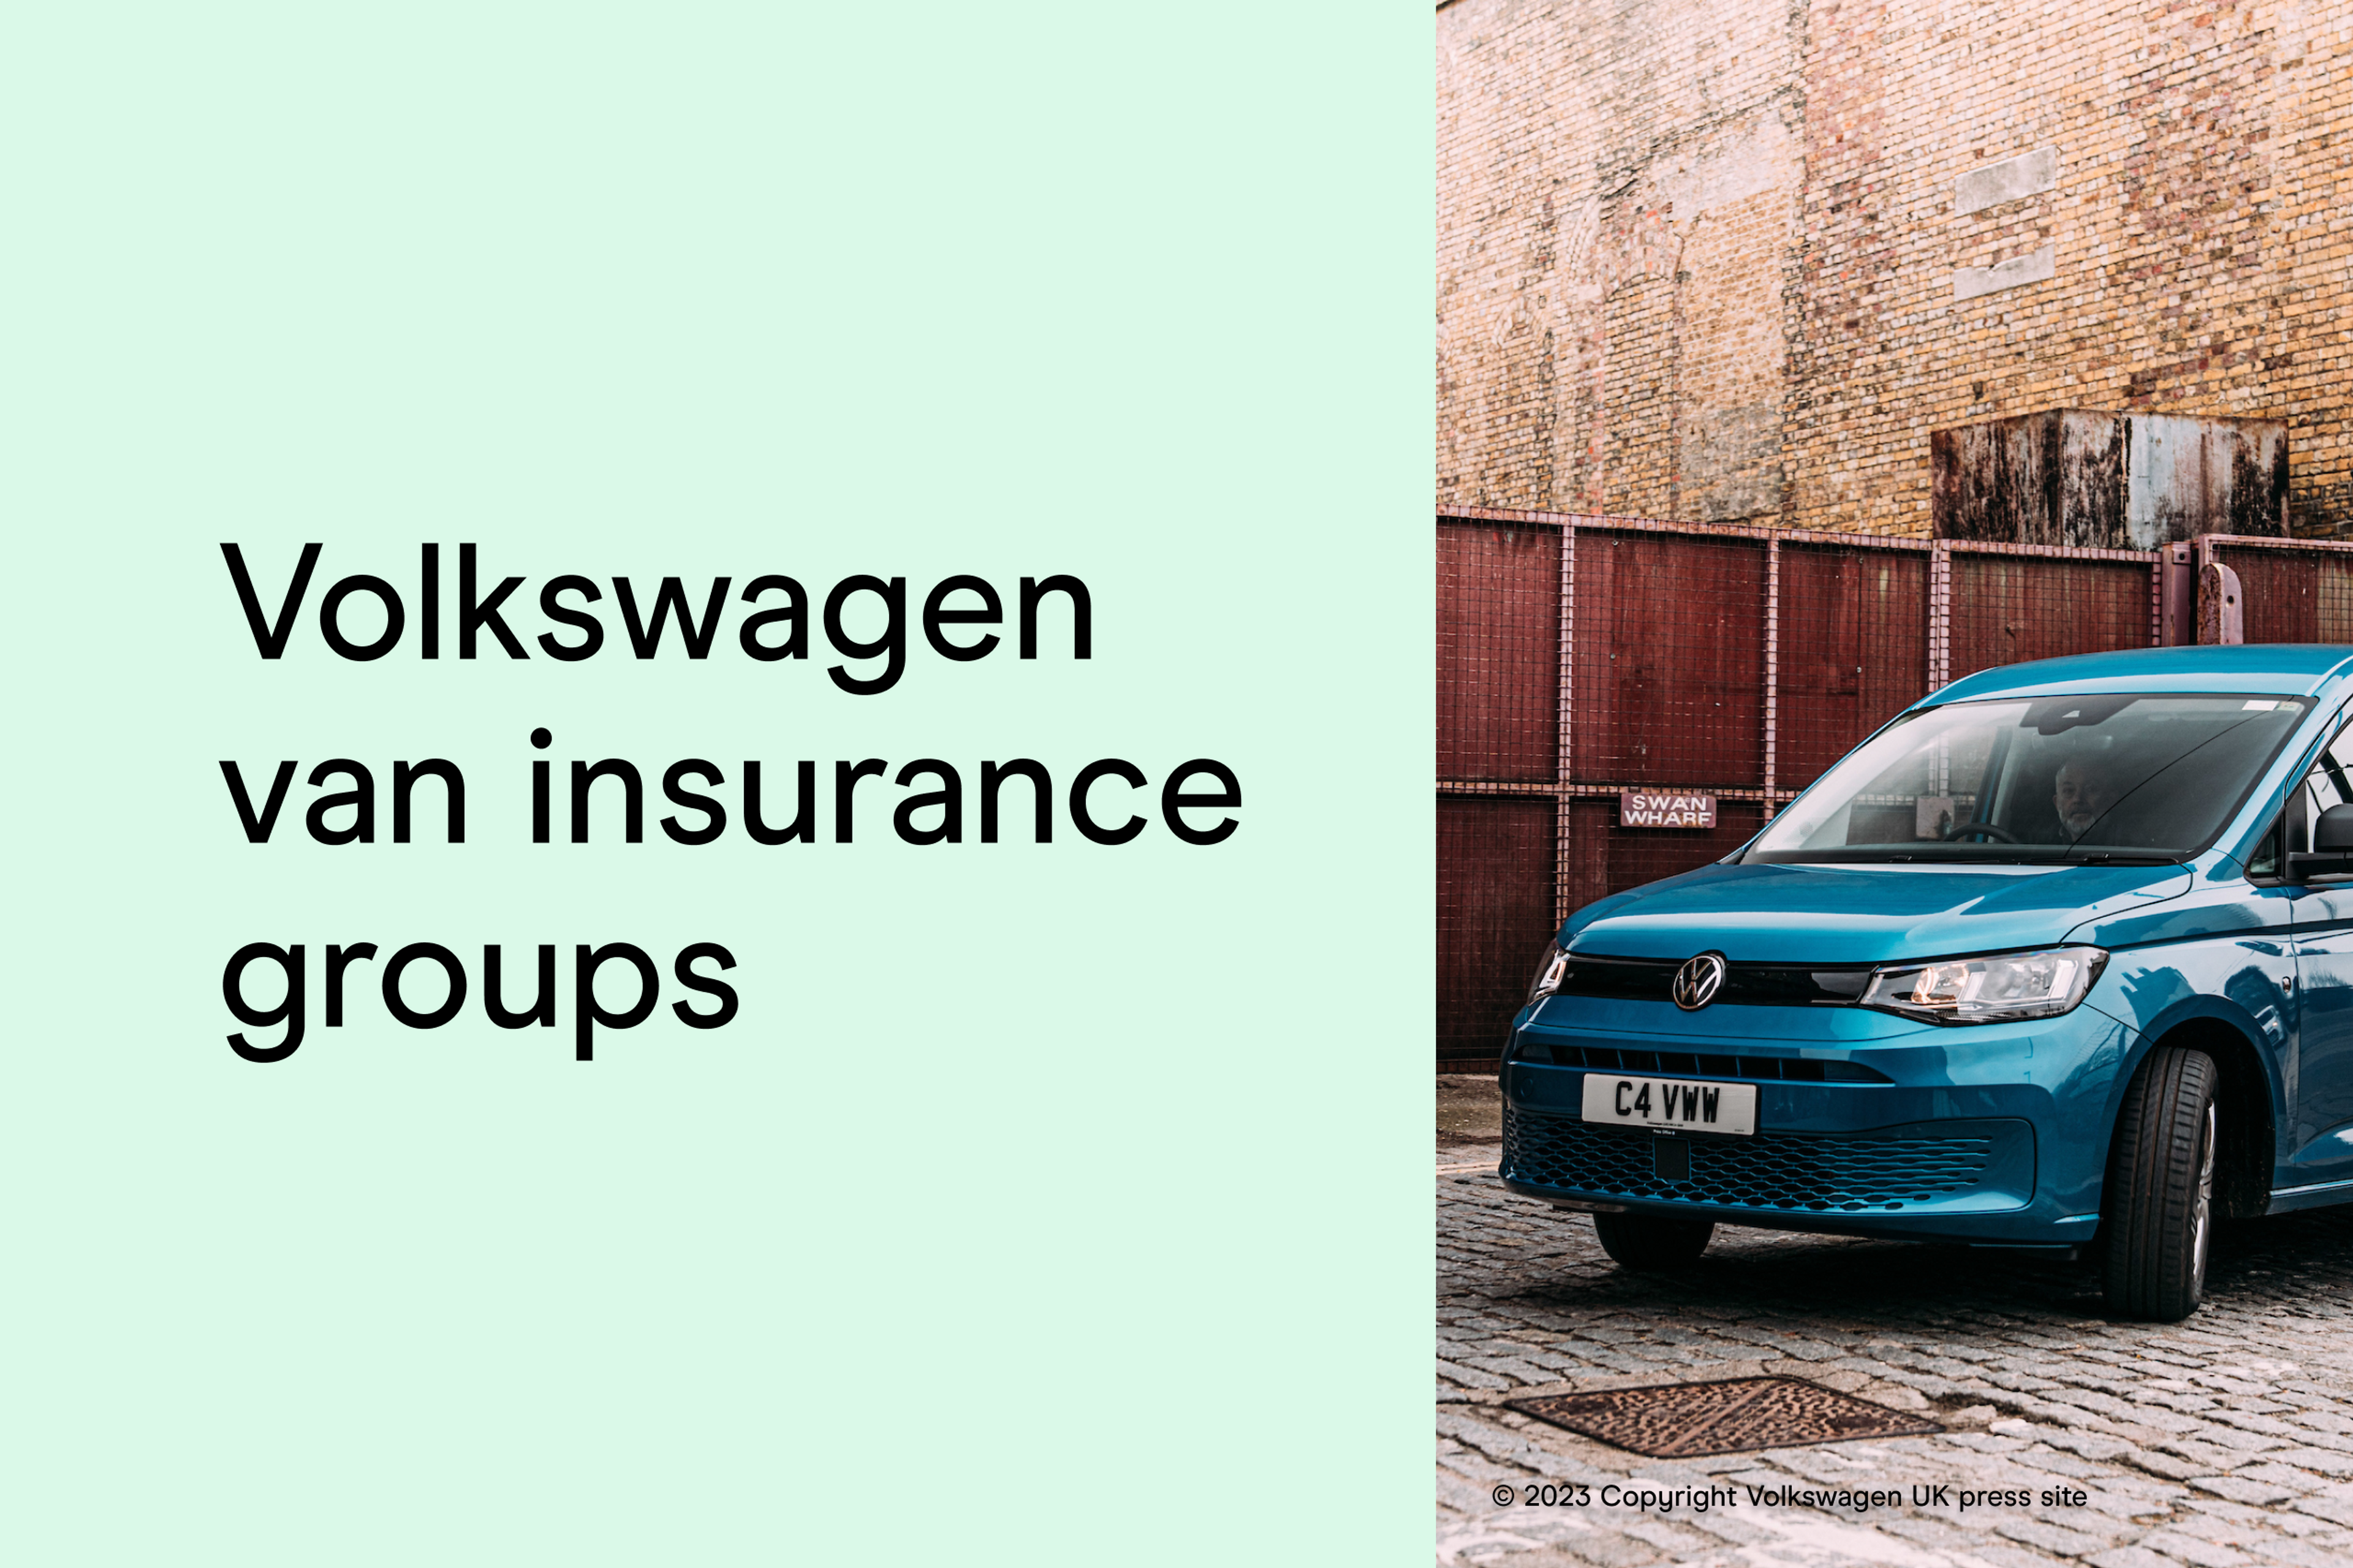 Volkswagen van insurance groups